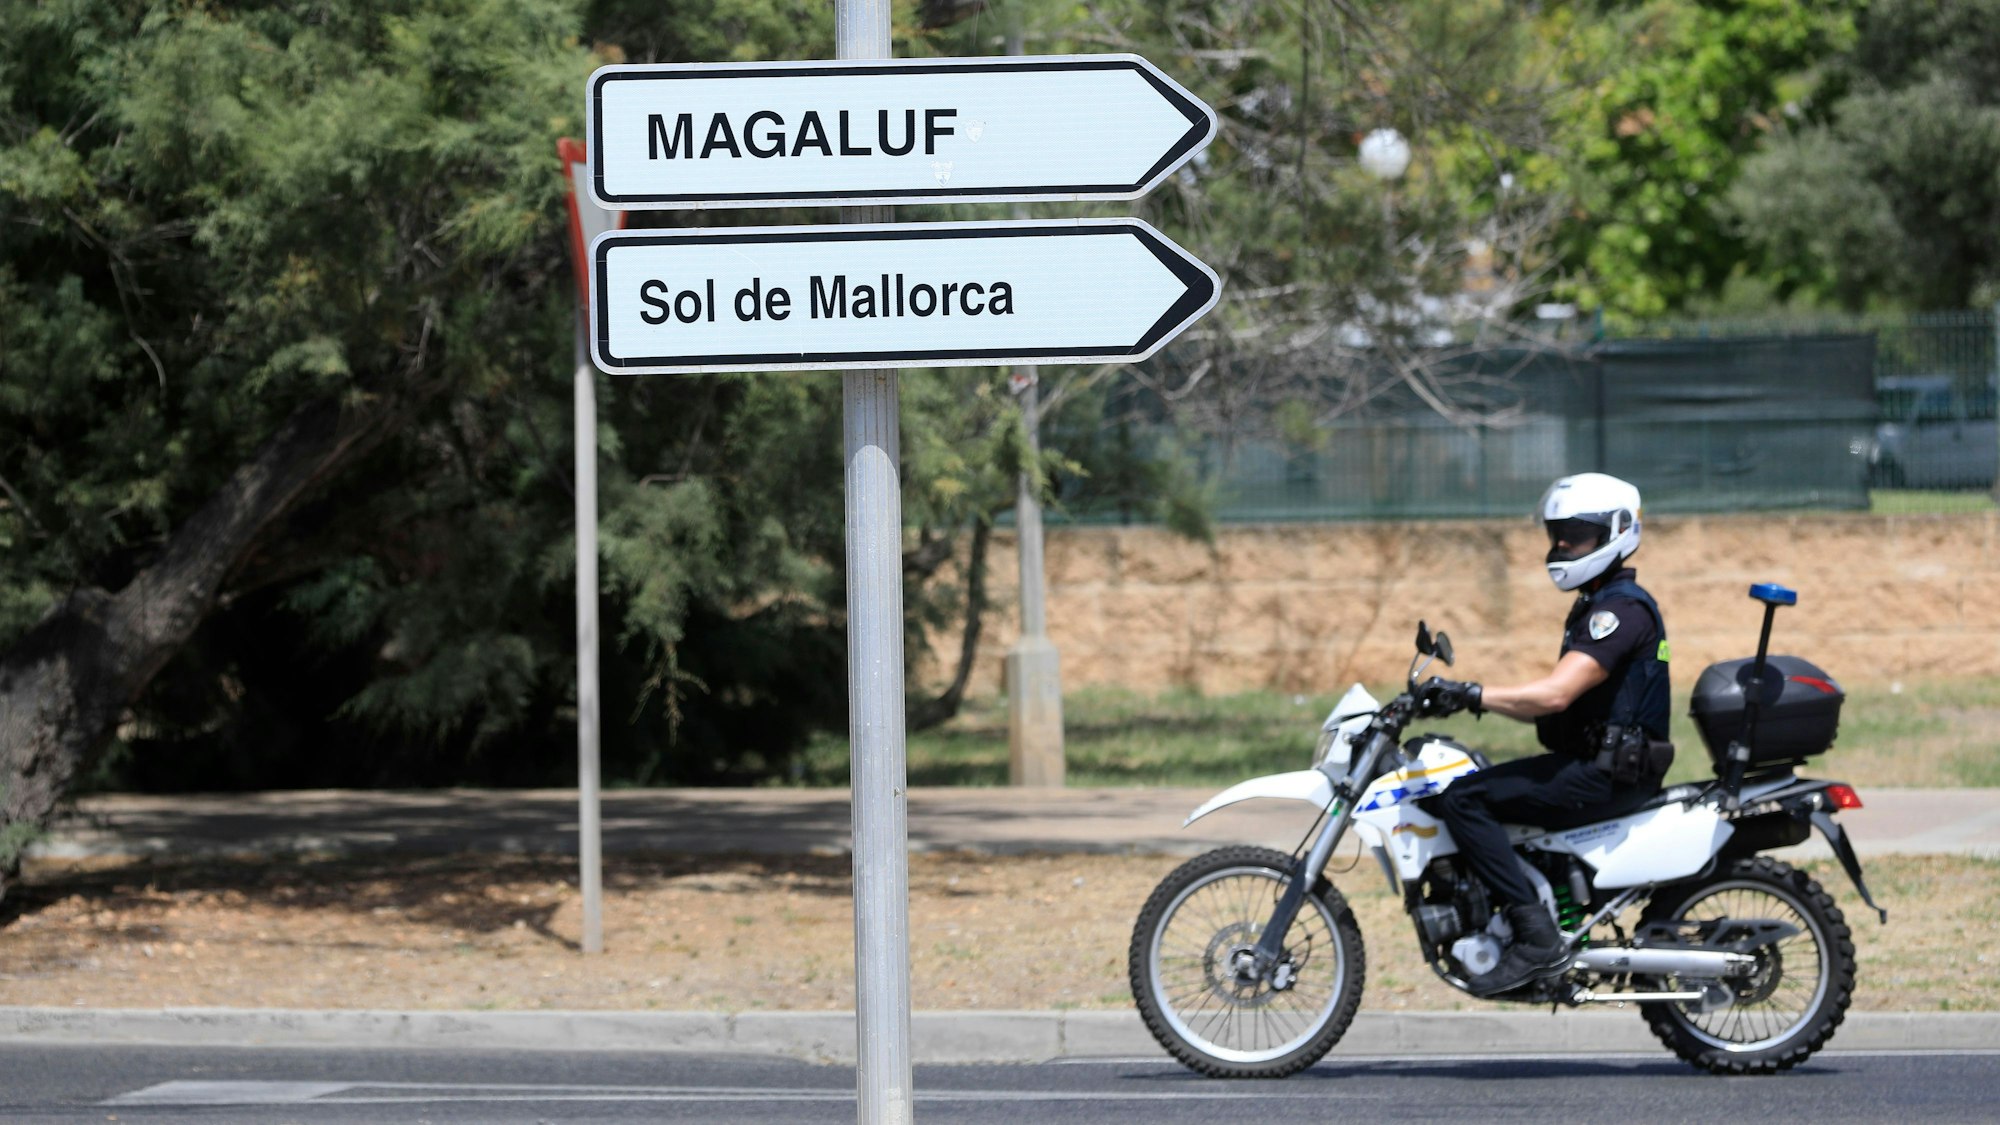 Ein Polizist fährt an einem Wegweiser zu Magaluf und Sol de Mallorca vorbei.